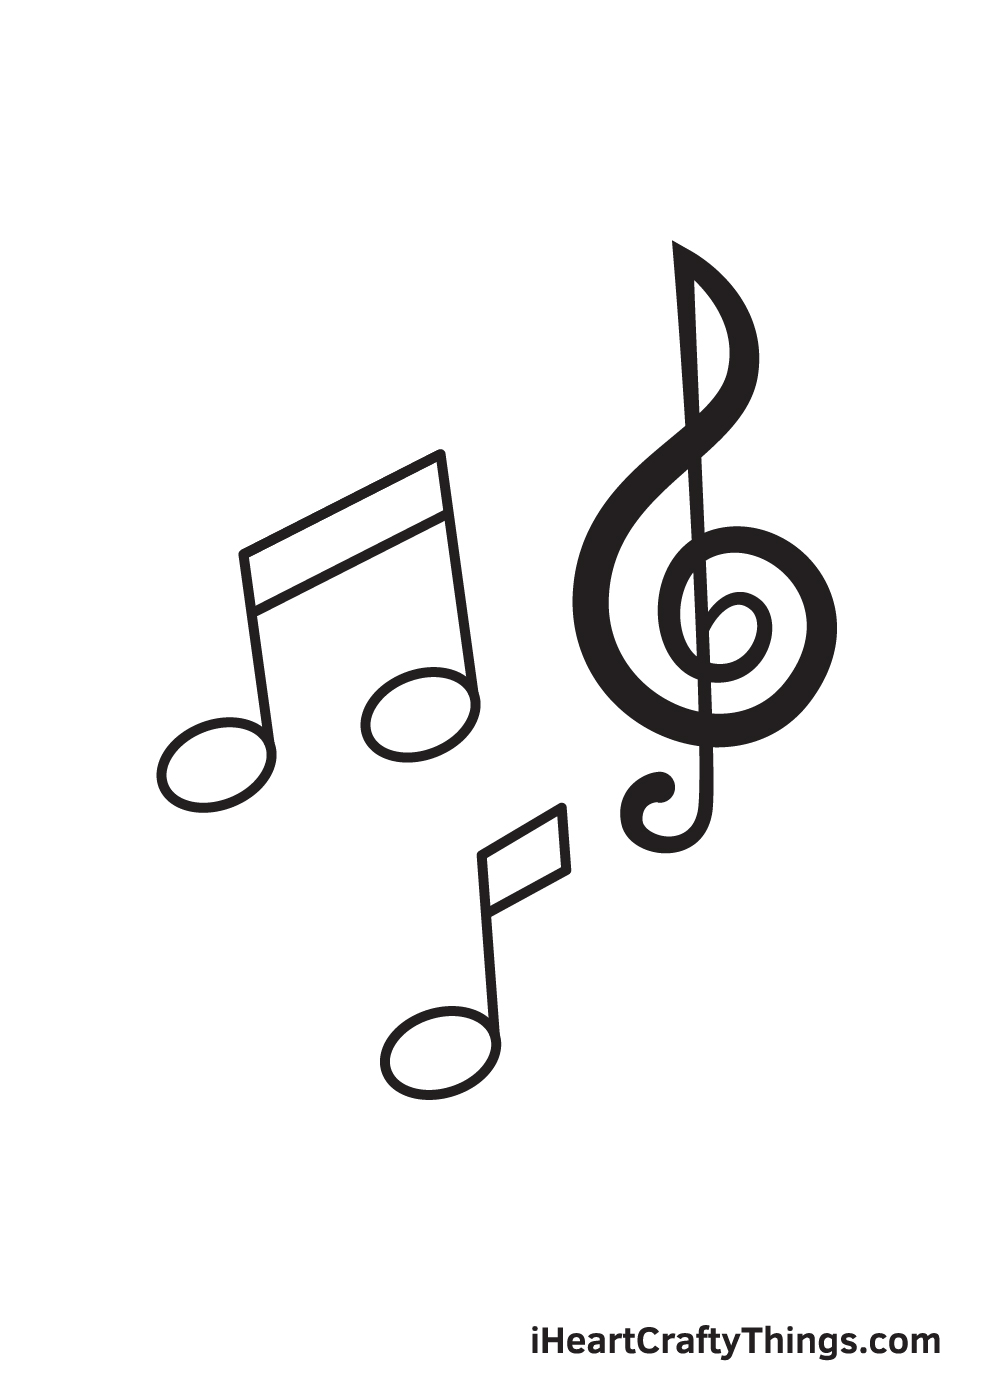 Music Notes DRAWING – STEP 9 - Hướng dẫn chi tiết cách vẽ nốt nhạc đơn giản với 9 bước cơ bản ai cũng làm được